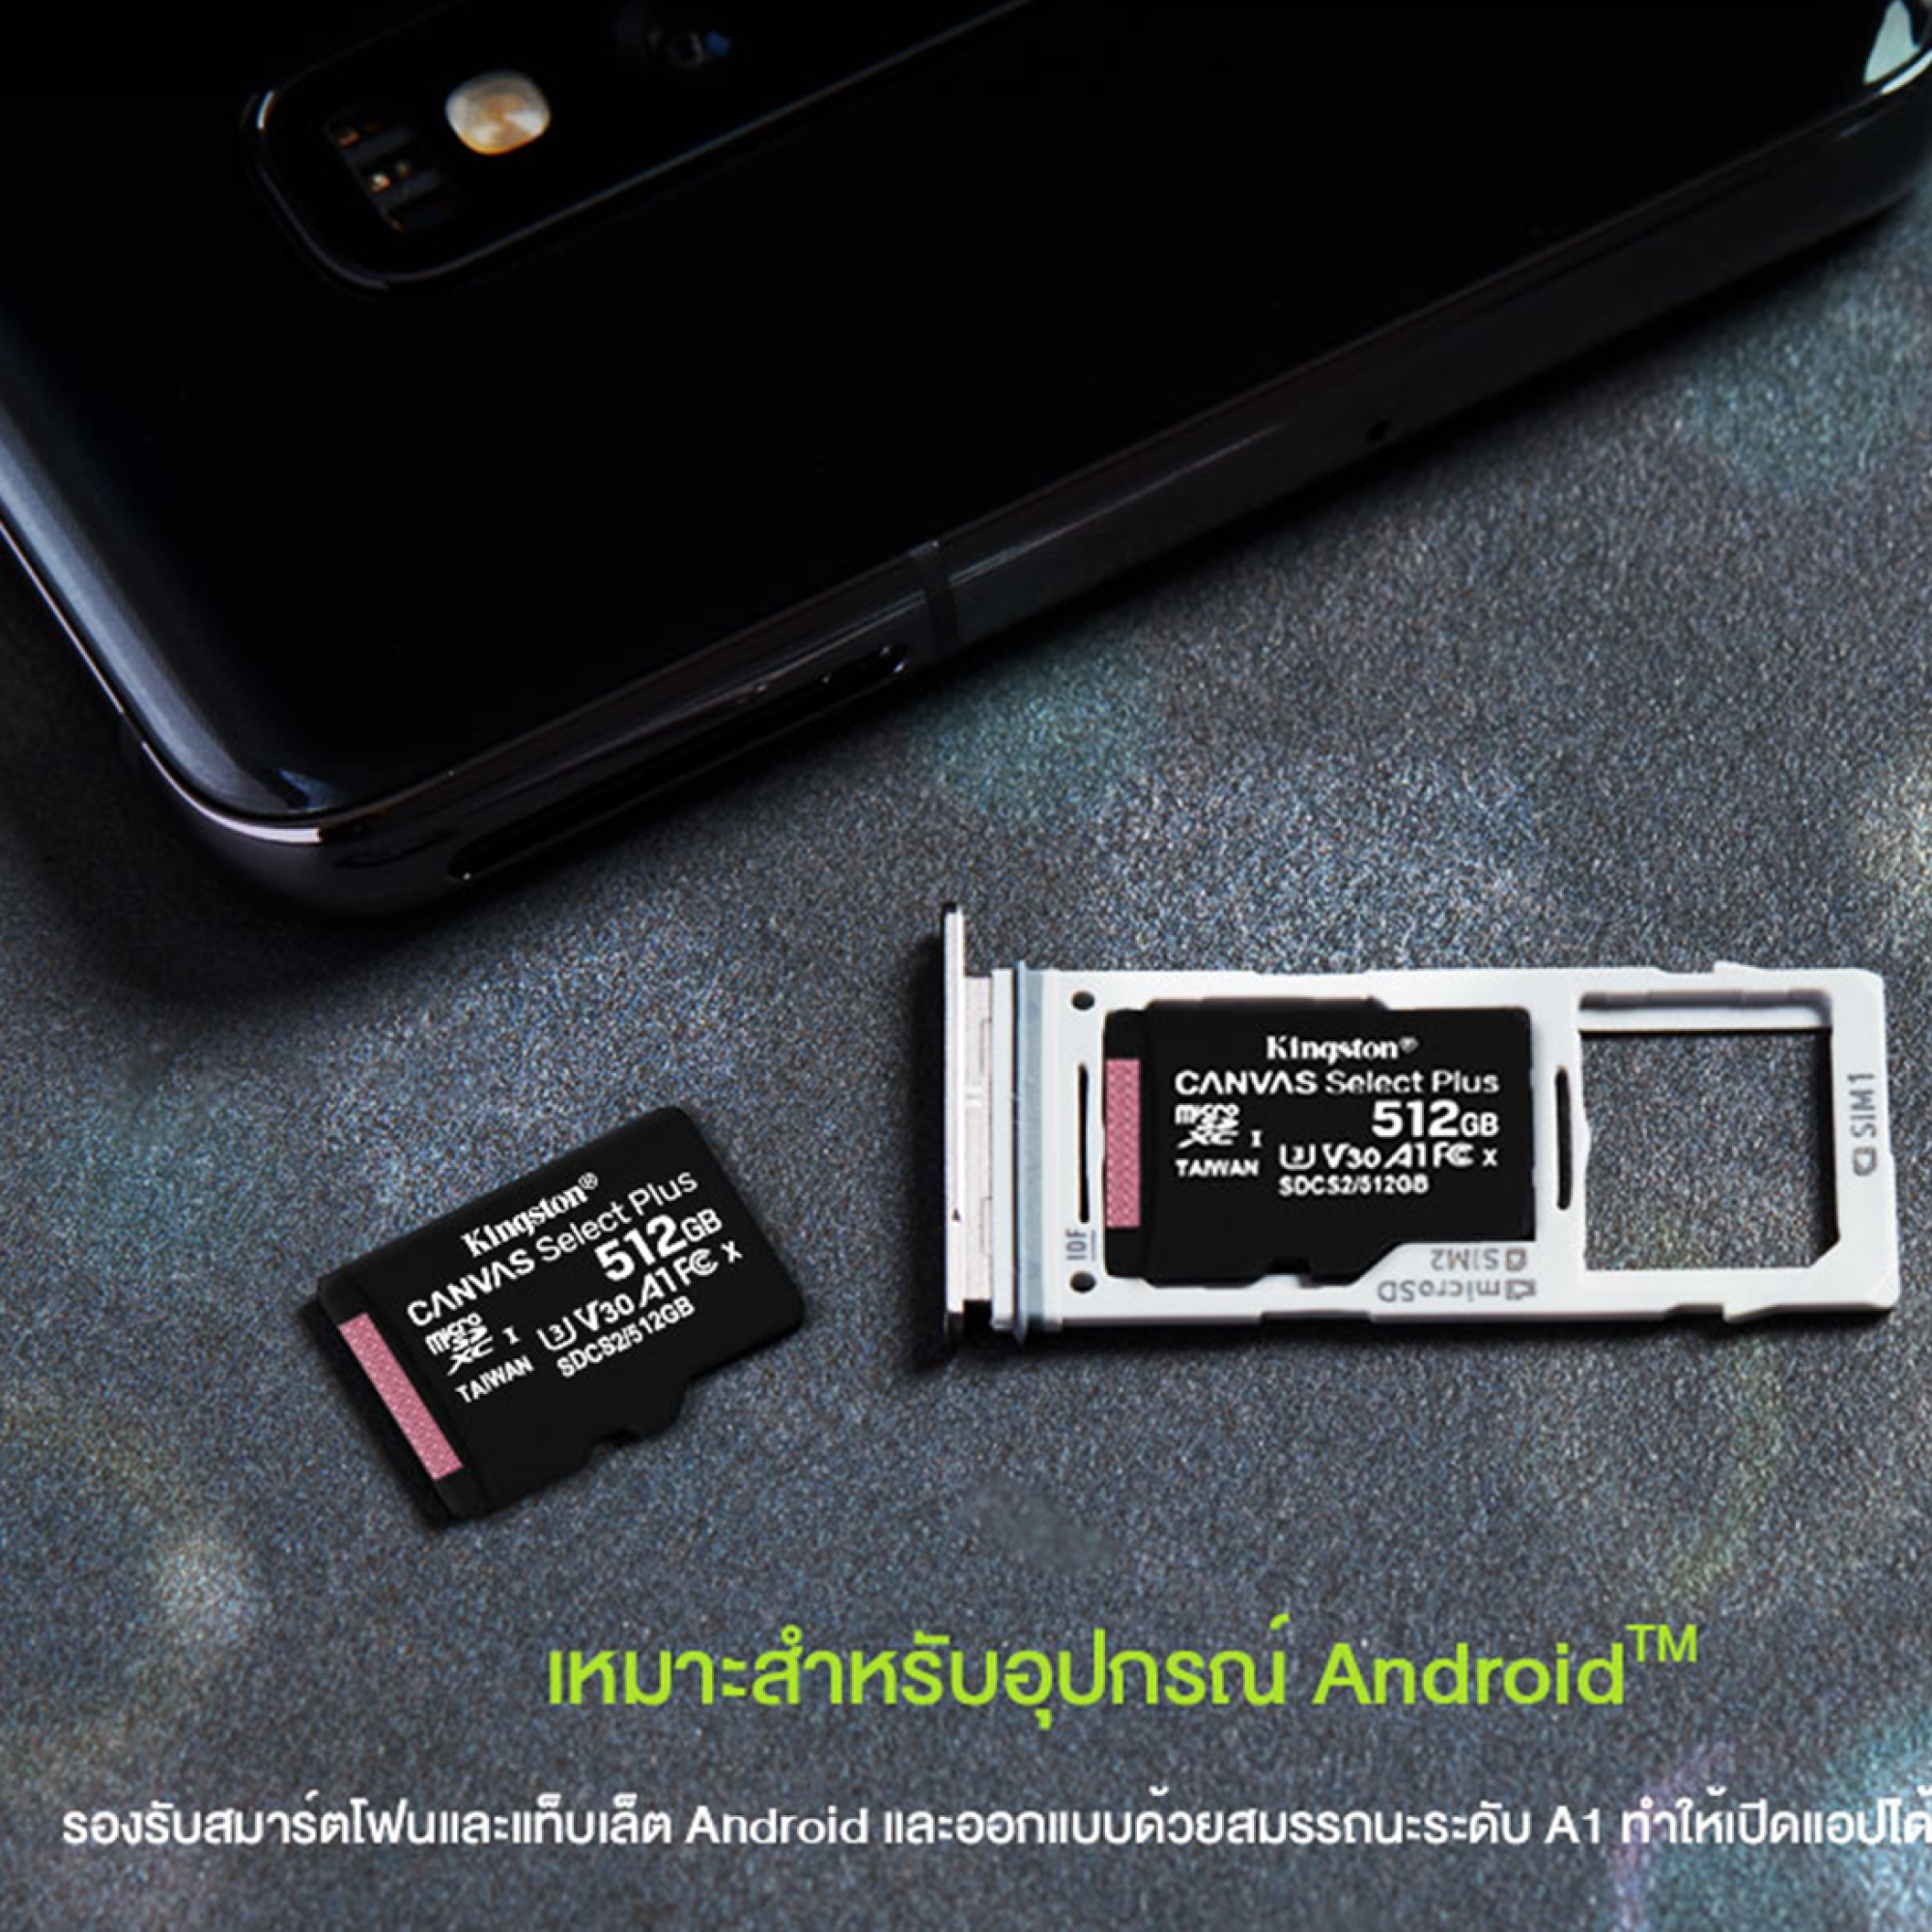 รายละเอียดเพิ่มเติมเกี่ยวกับ ของแท้ ศูนย์ Kingston Memory Card Micro SD 16GB 32GB 64GB Class 10 ของแท้ ศูนย์ ingram เหมาะสำหรับกล้องติดรถ/มือถือ ระวังของปลอมถูกแต่จะใช้ไม่ได้